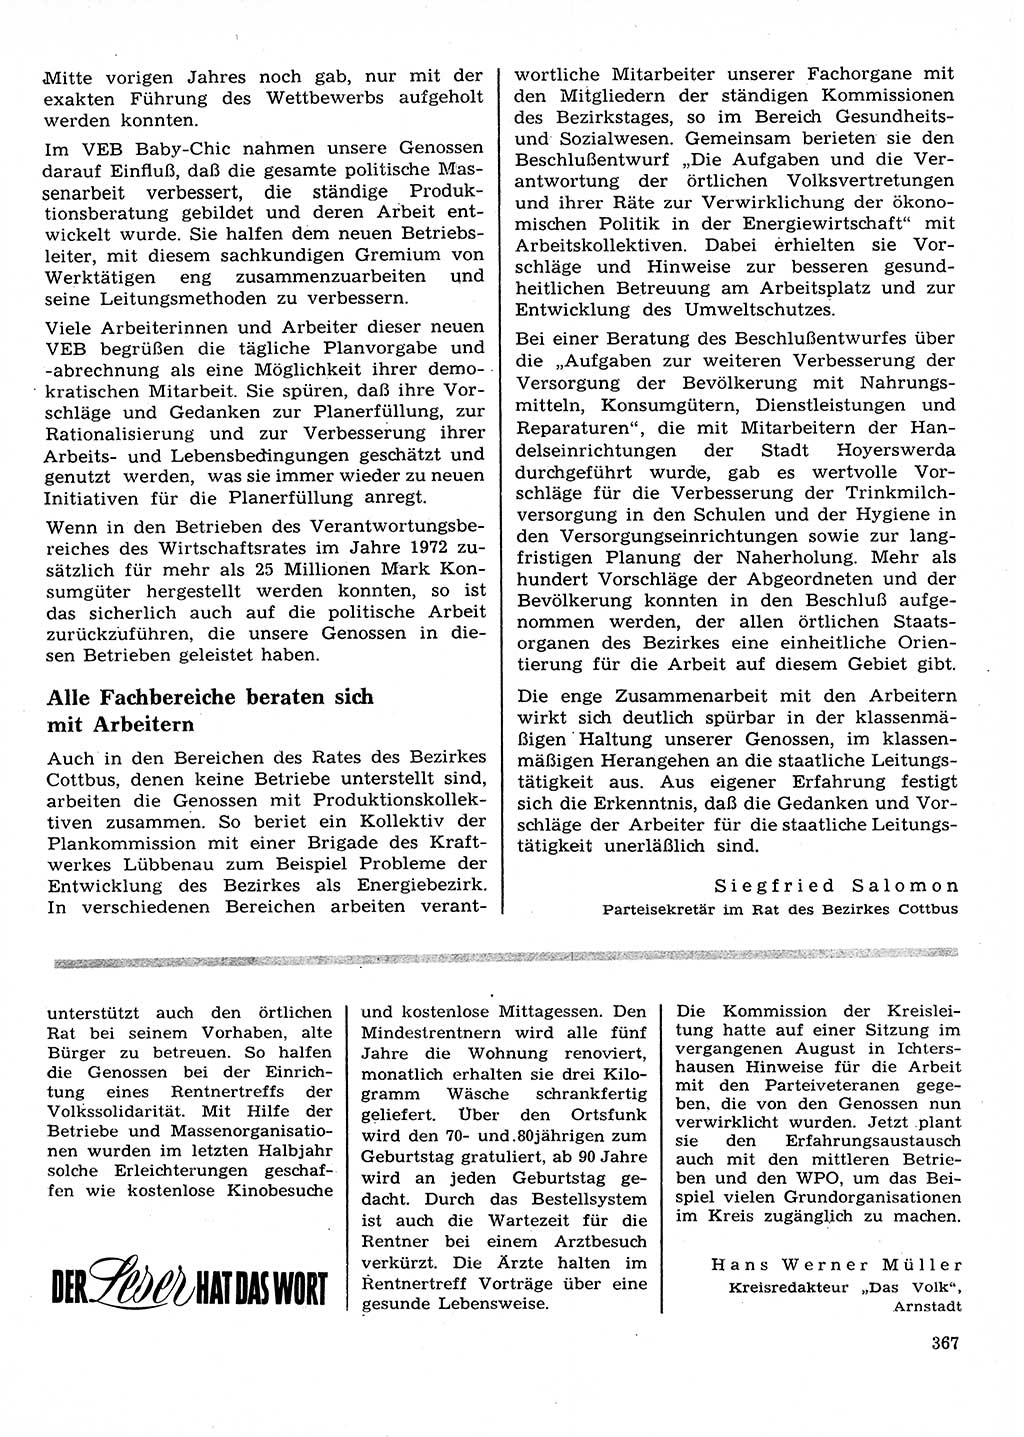 Neuer Weg (NW), Organ des Zentralkomitees (ZK) der SED (Sozialistische Einheitspartei Deutschlands) für Fragen des Parteilebens, 28. Jahrgang [Deutsche Demokratische Republik (DDR)] 1973, Seite 367 (NW ZK SED DDR 1973, S. 367)